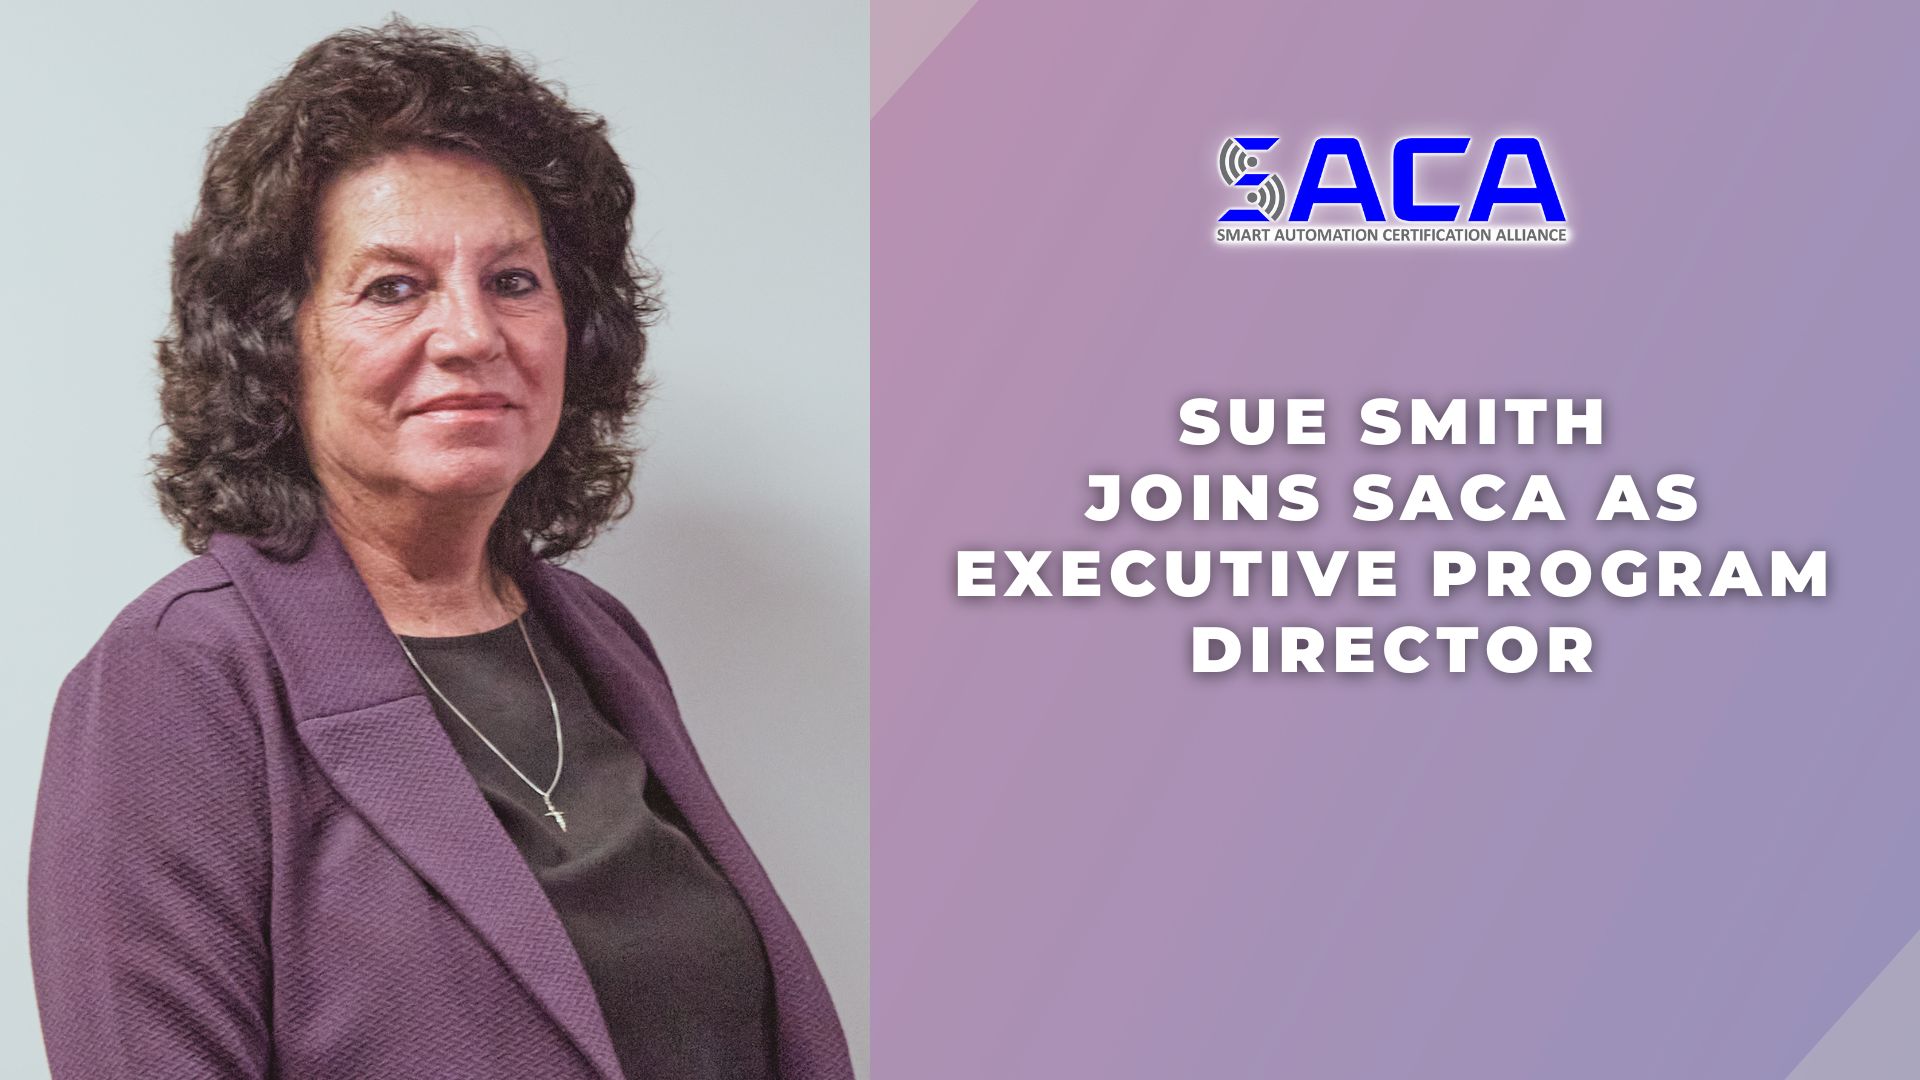 SACA - Sue Smith Joins SACA as Executive Program Director